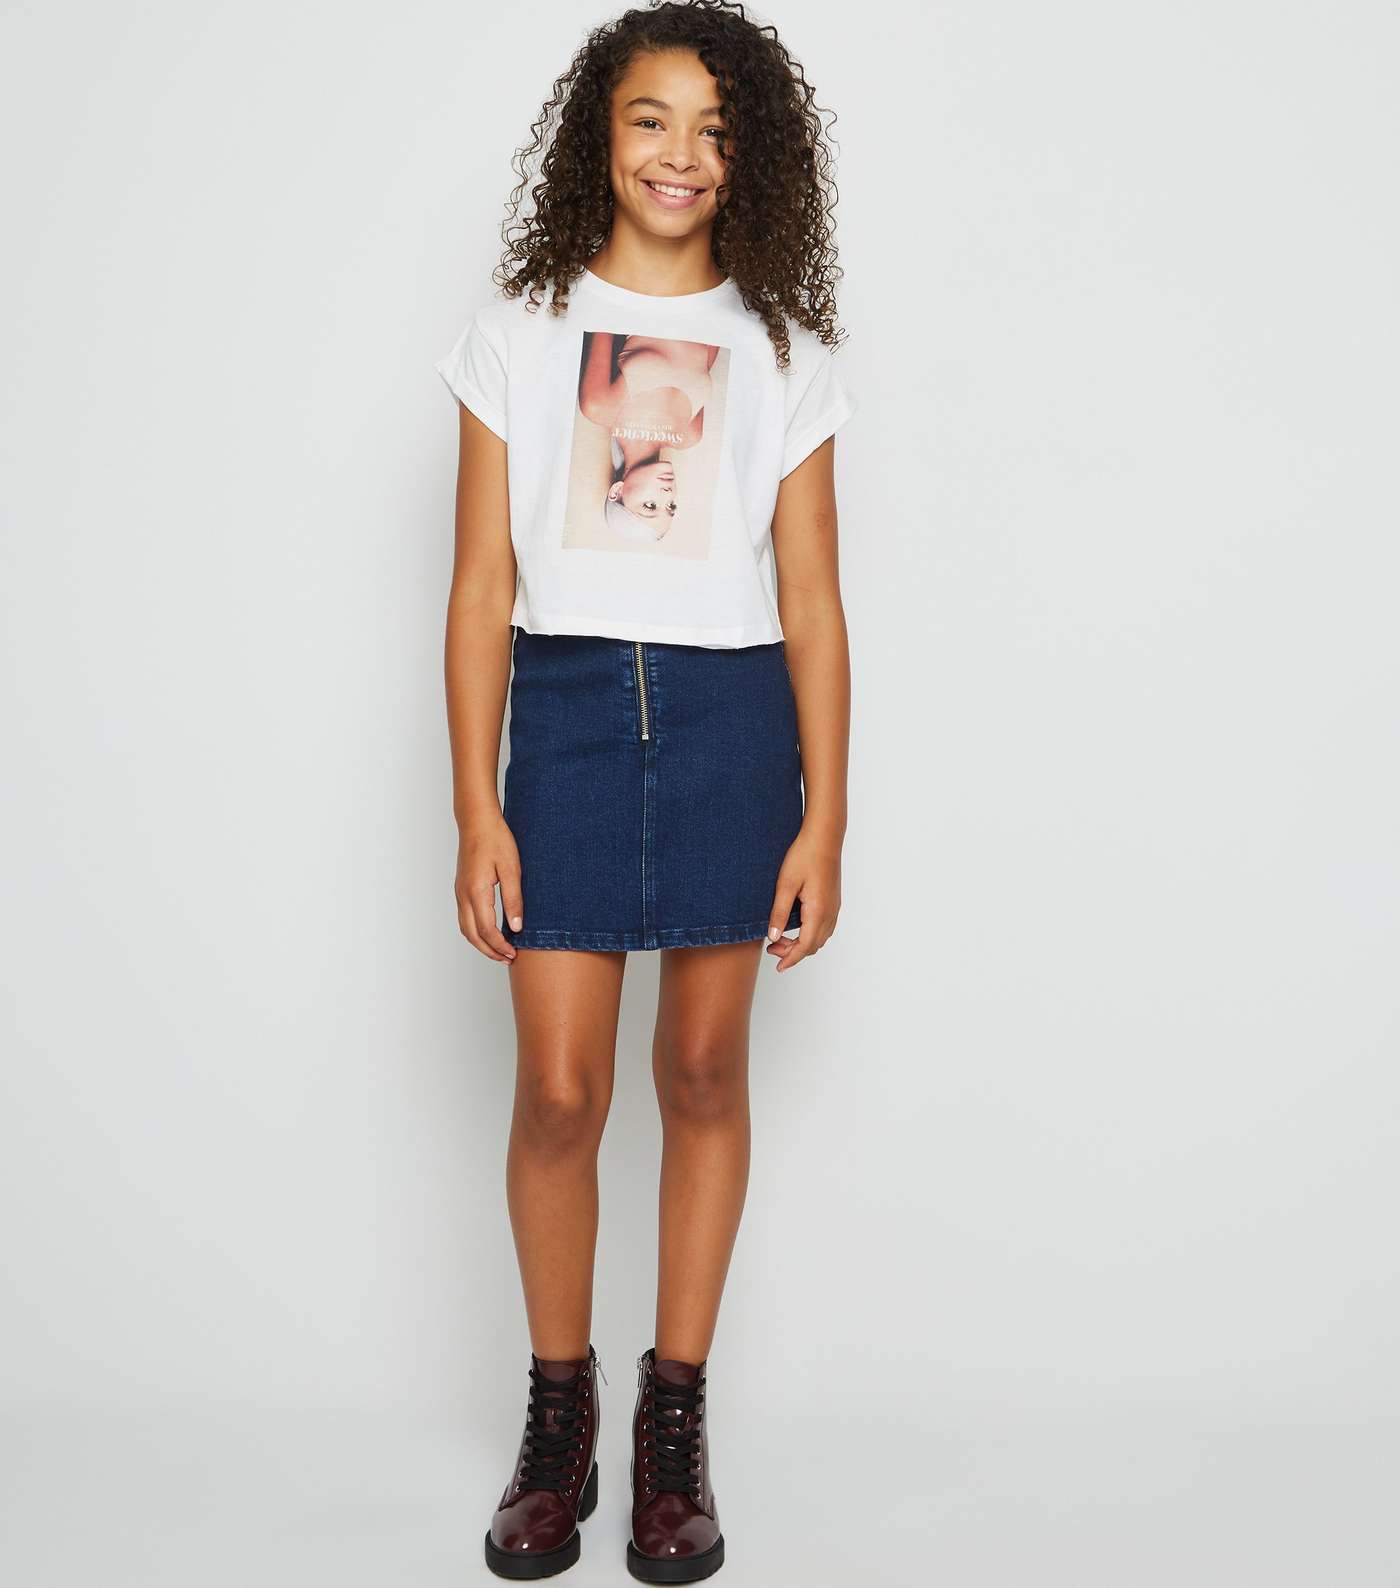 Girls White Sweetener Ariana Grande T-Shirt Image 2